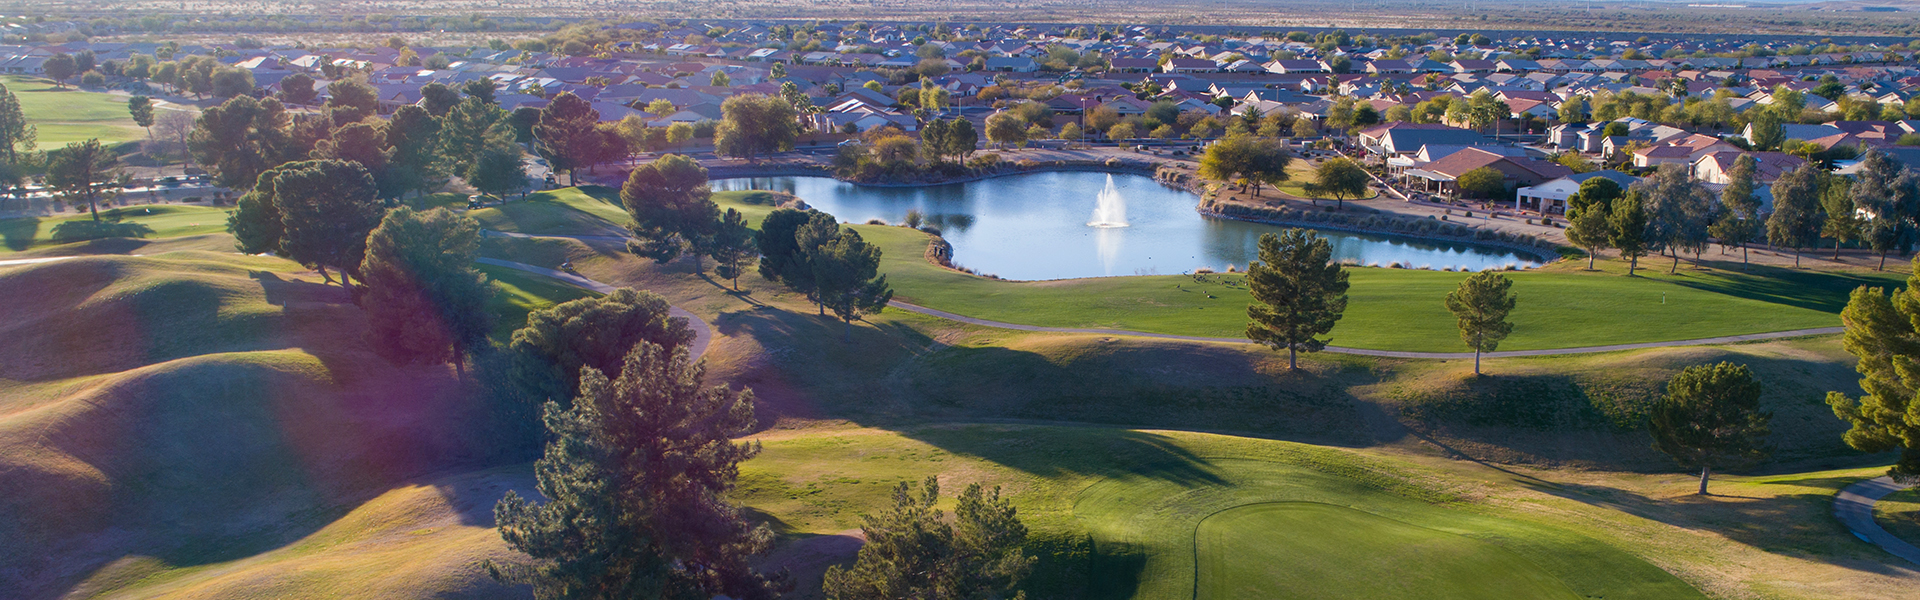 Mini Golf - 9 Hole Course   Phoenix, AZ